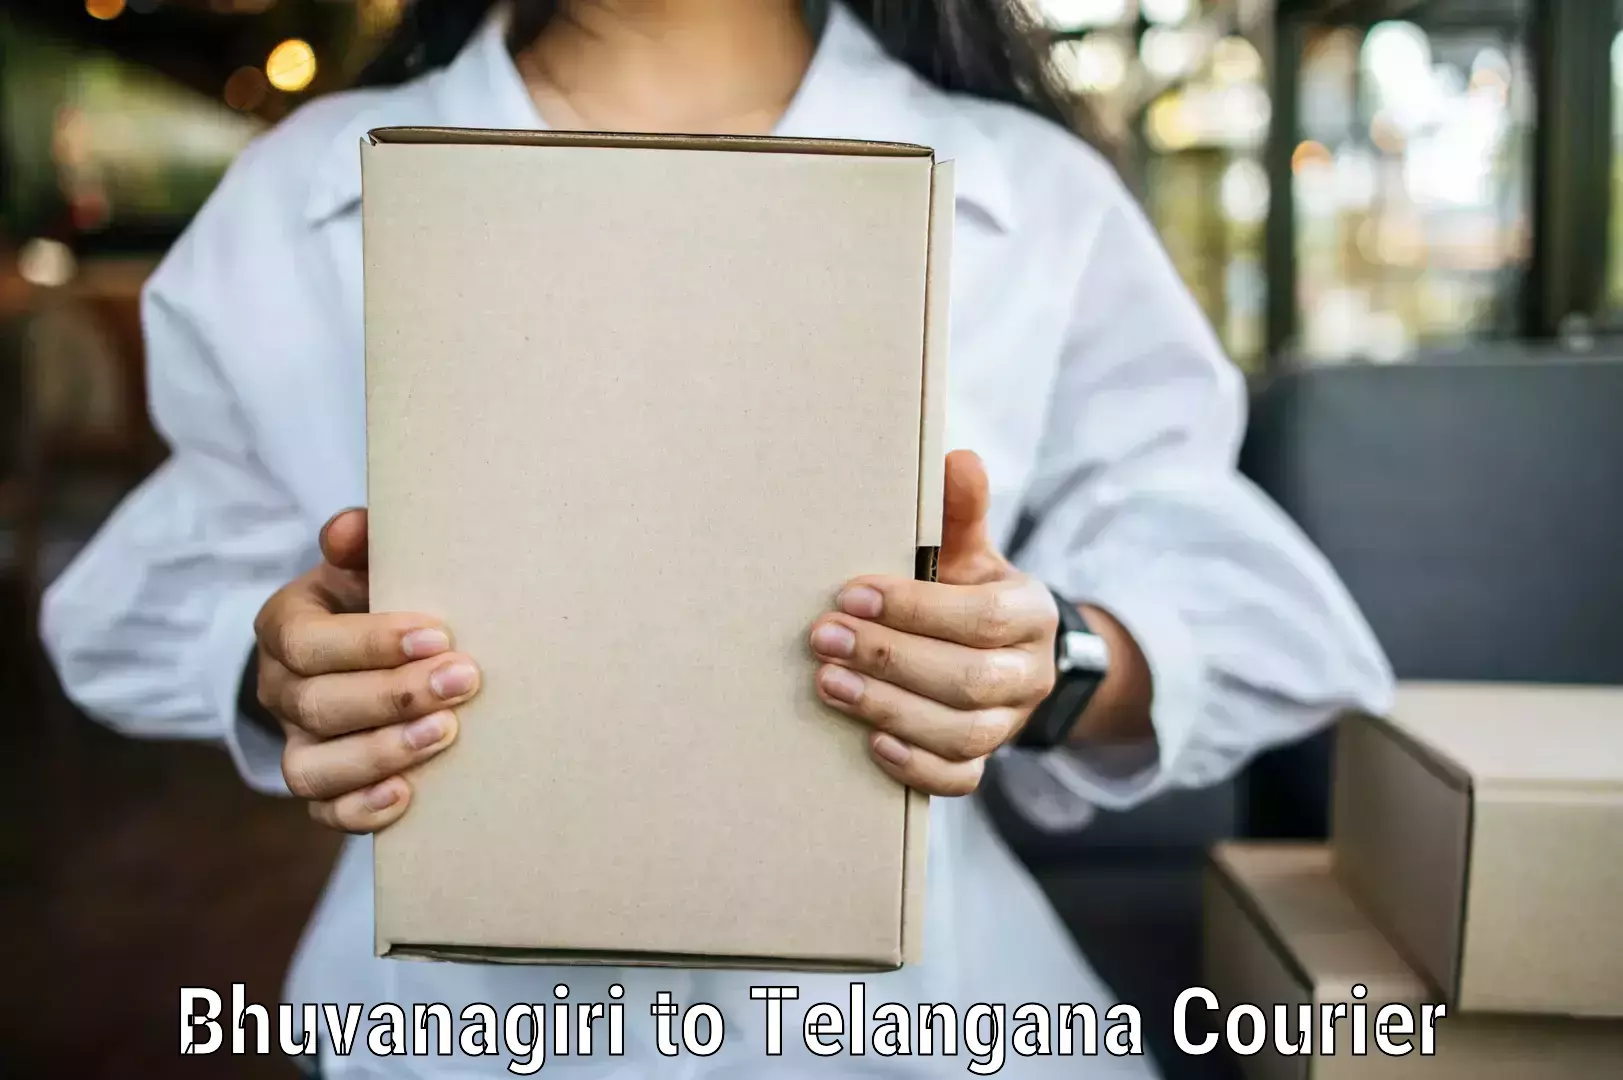 Professional courier handling Bhuvanagiri to Telangana